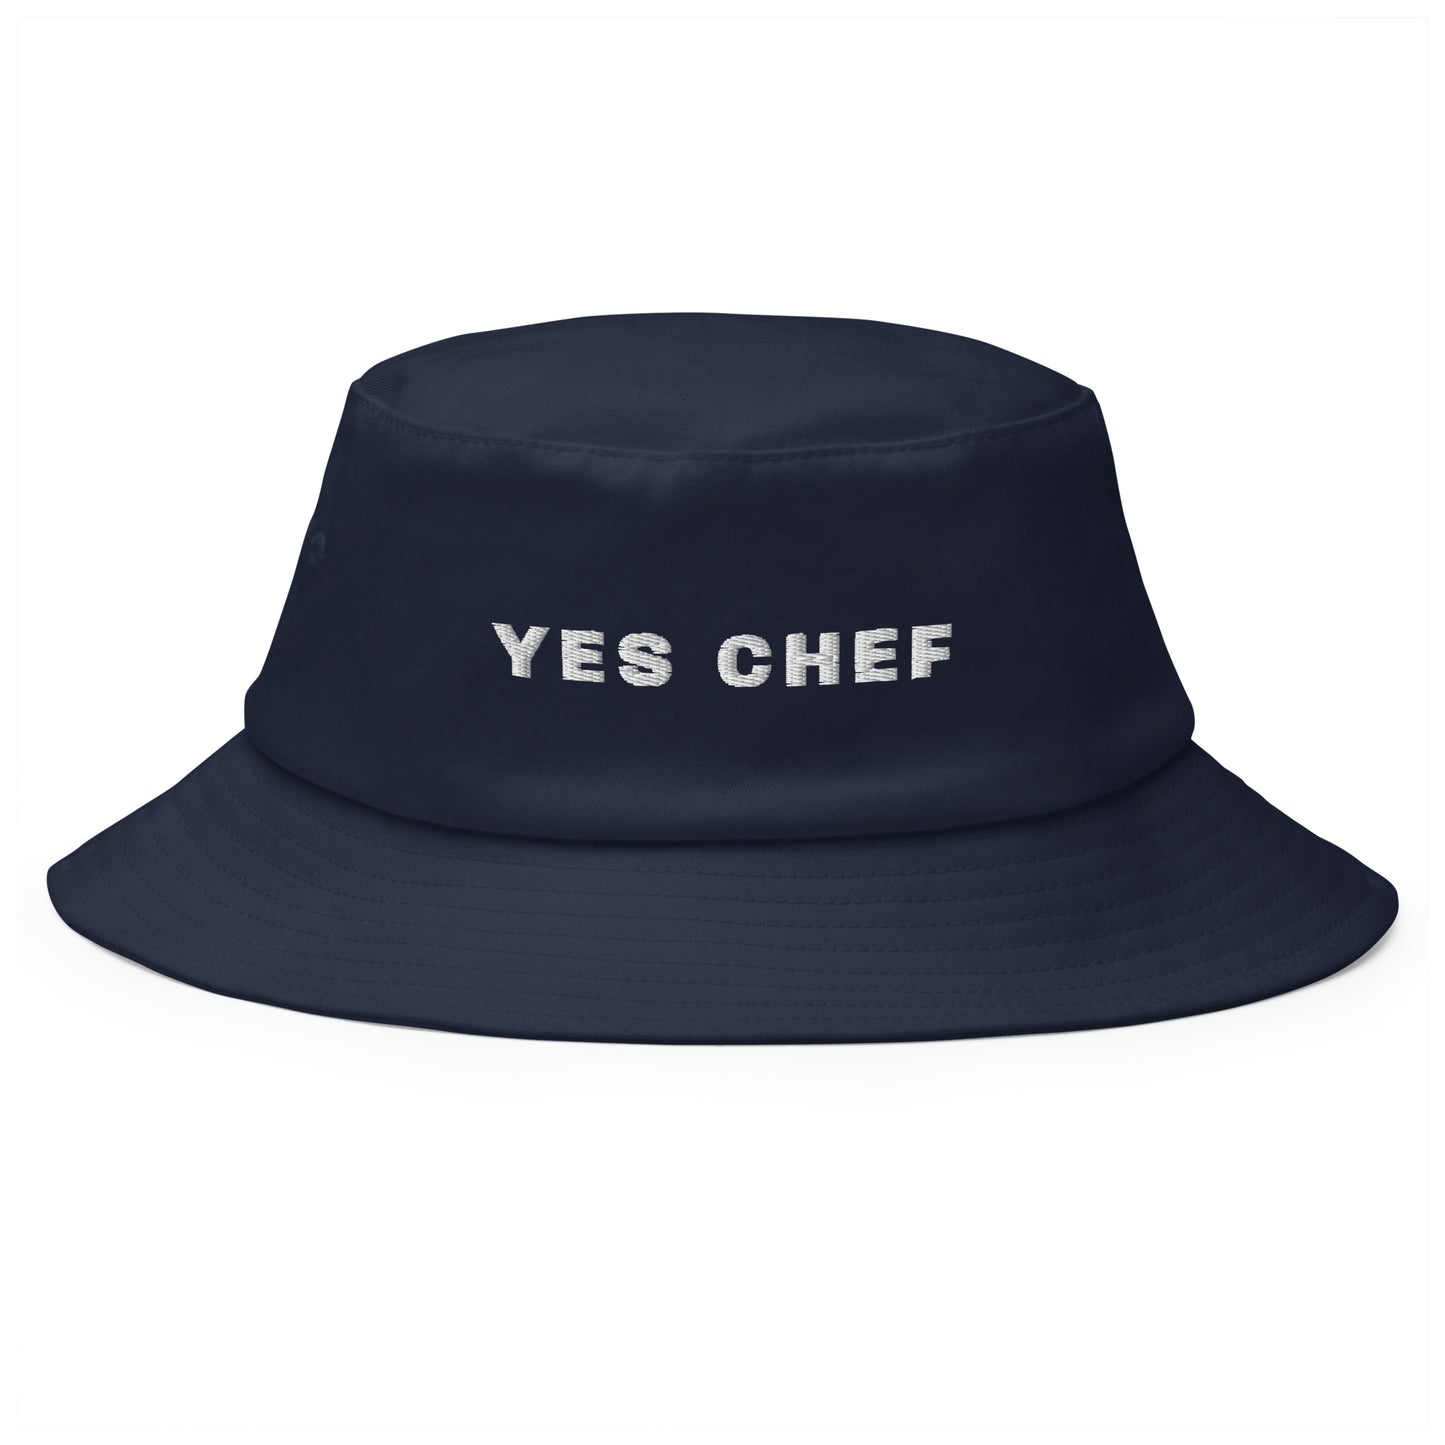 Produktfoto des bestickten Fischerhuts 'I YES CHEF' von YourCapGuy auf einem weißen Hintergrund. Der Hut ist in einem stilvollen Farbton gehalten, der aussagekräftige Schriftzug setzt einen humorvollen Akzent.